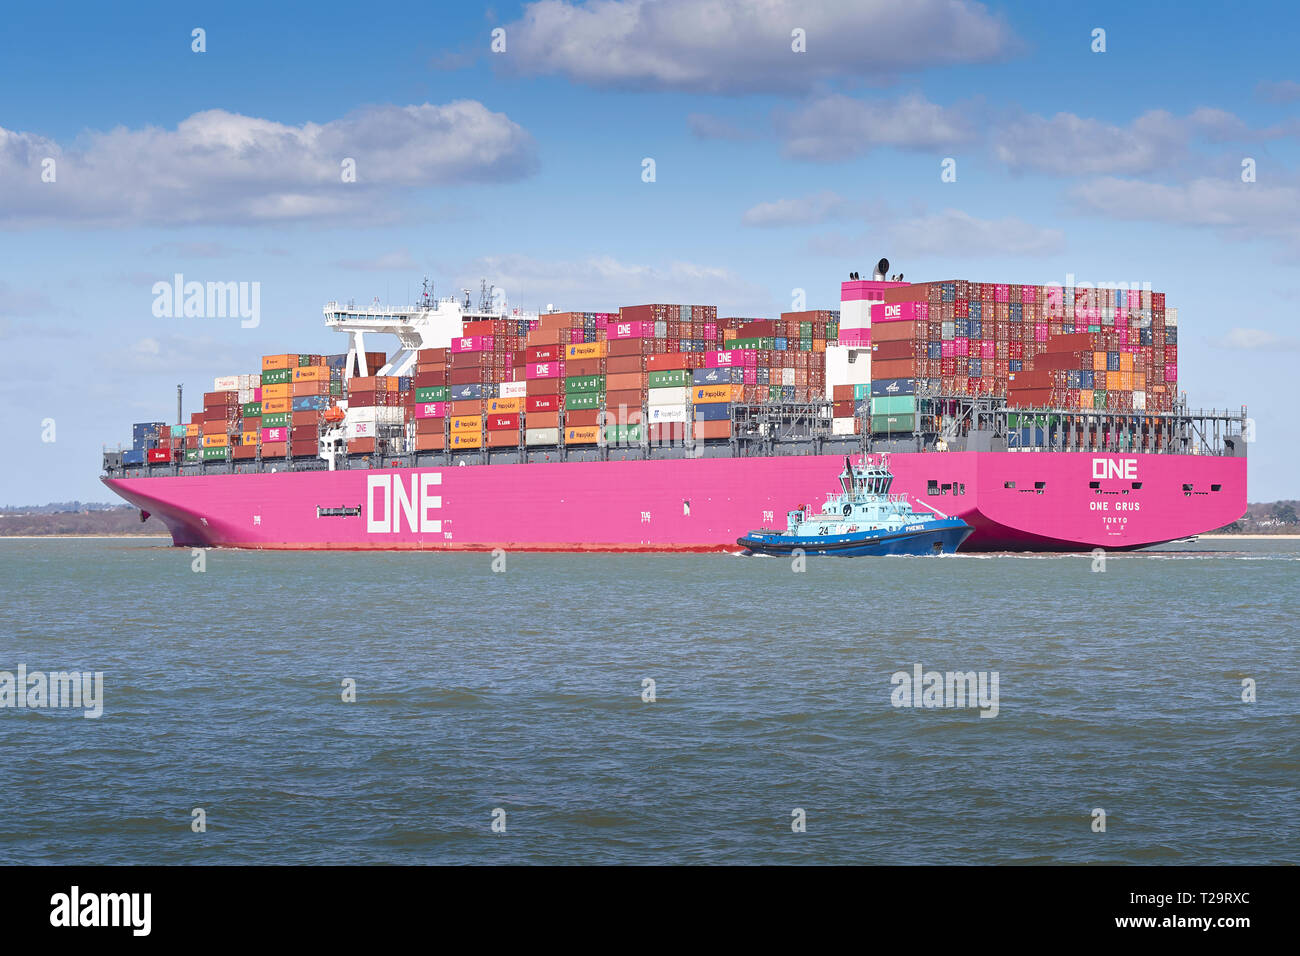 Rimorchiatore Guide PHENIX la nuova rete Ocean Express di portacontainer, uno GRUS, con il distintivo scafo Magenta, come ella si avvicina a Southampton Docks. Regno Unito. Foto Stock